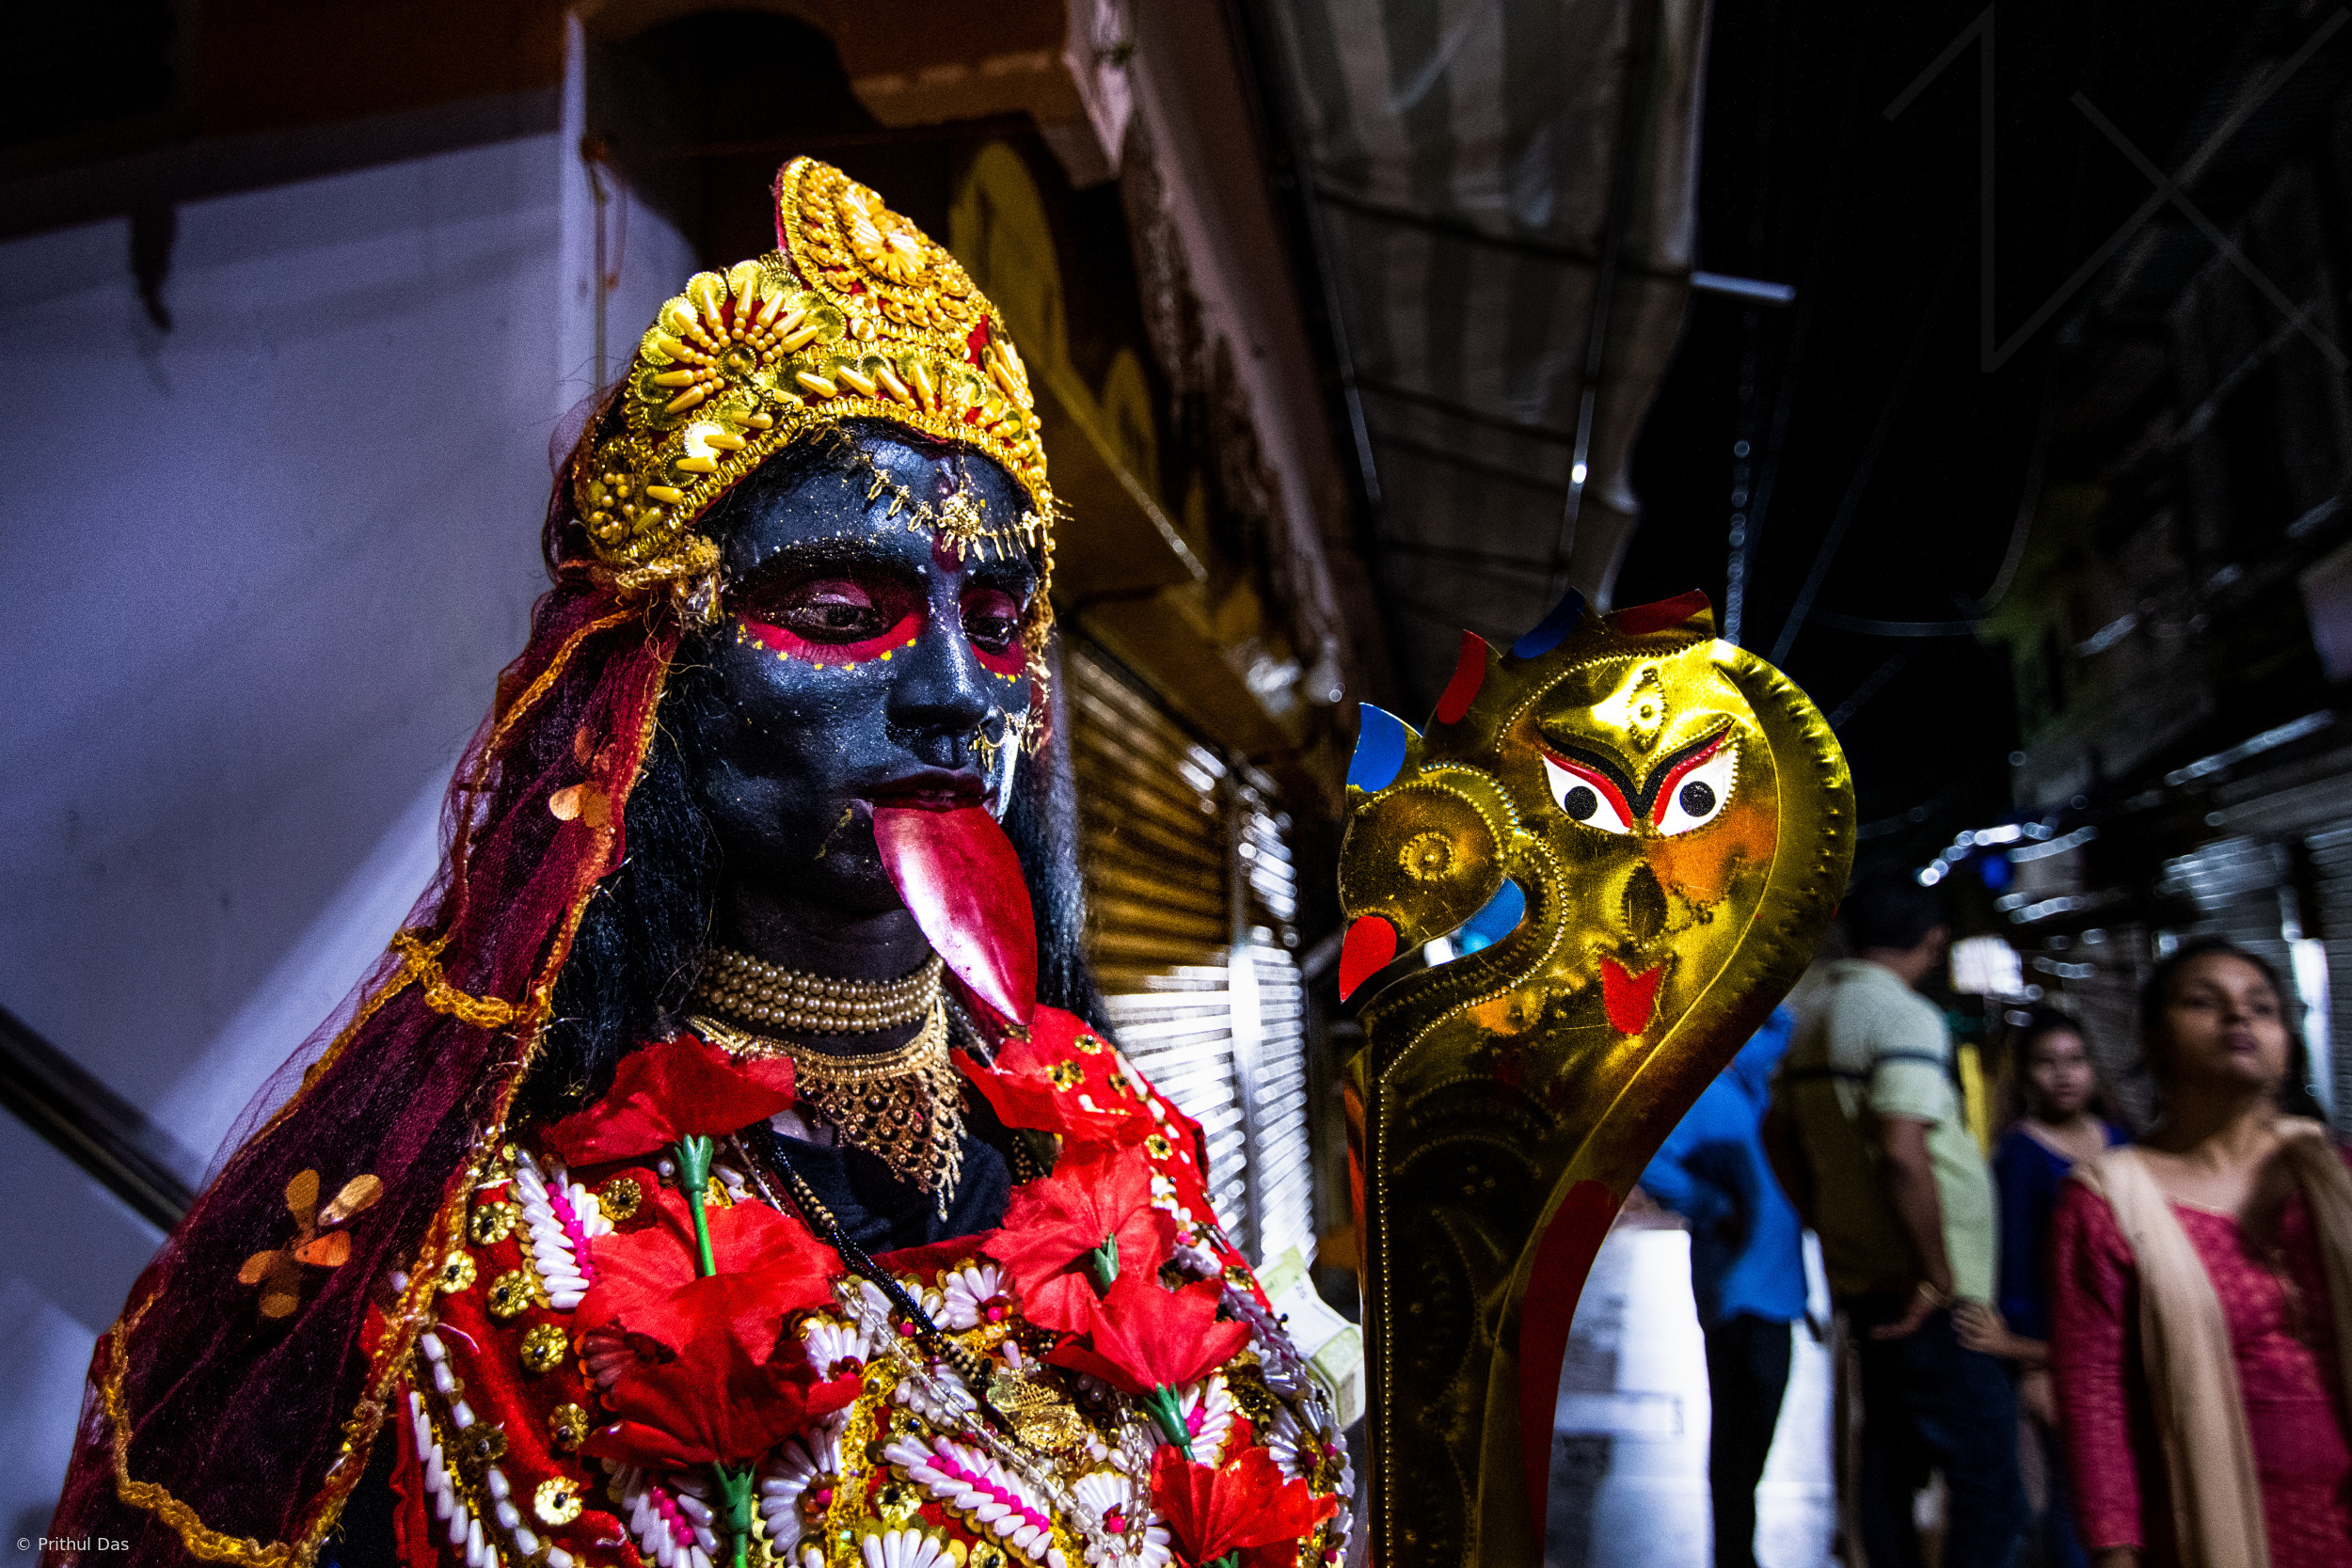 Devotee as Kali Mata by Prithul Das